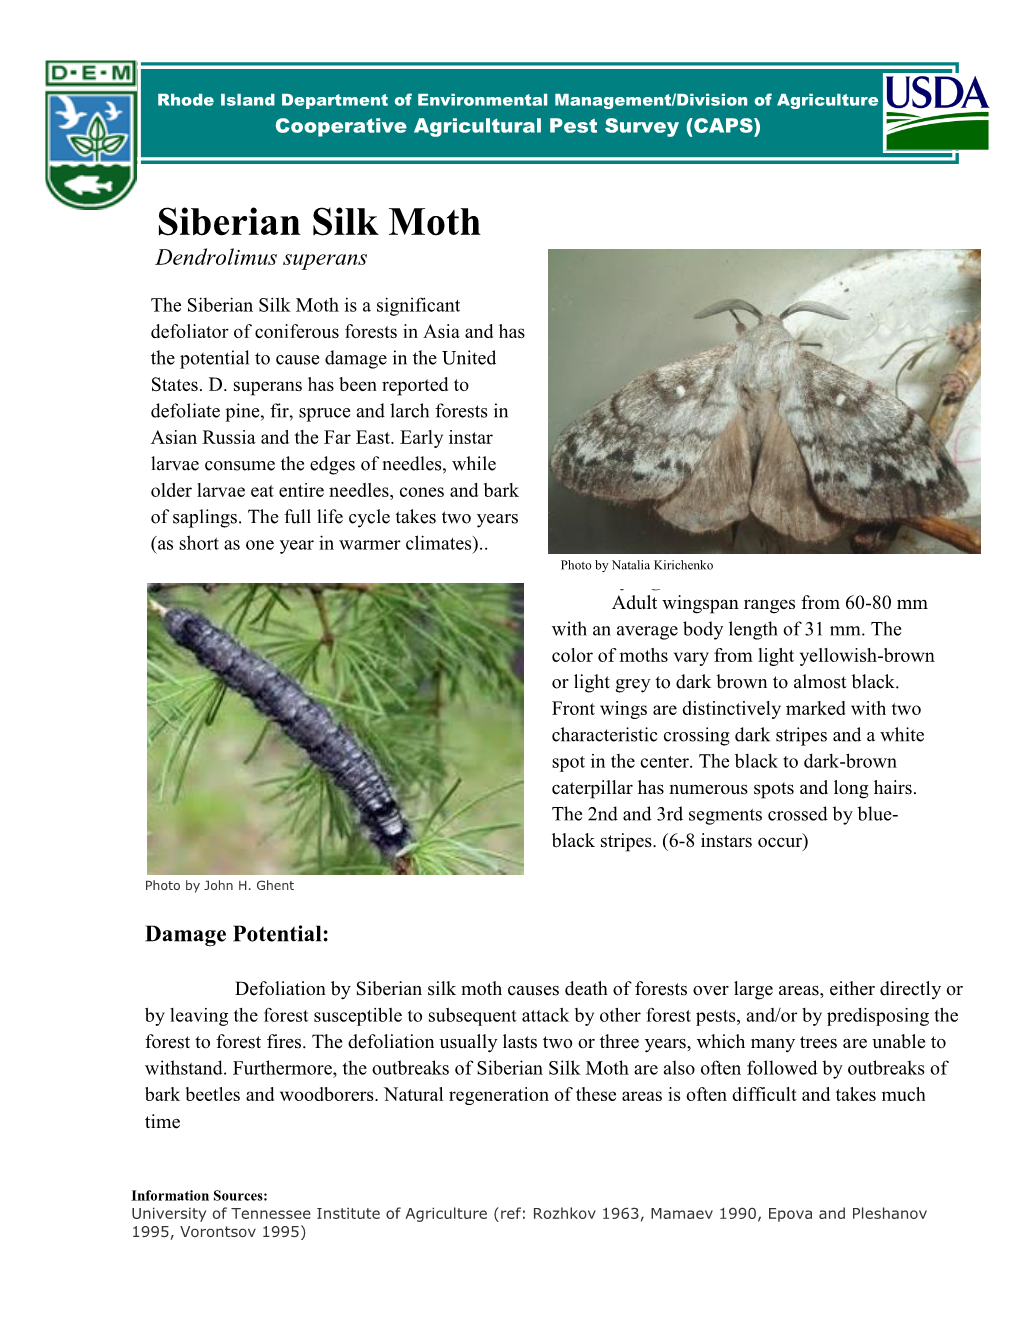 Siberian Silk Moth Dendrolimus Superans